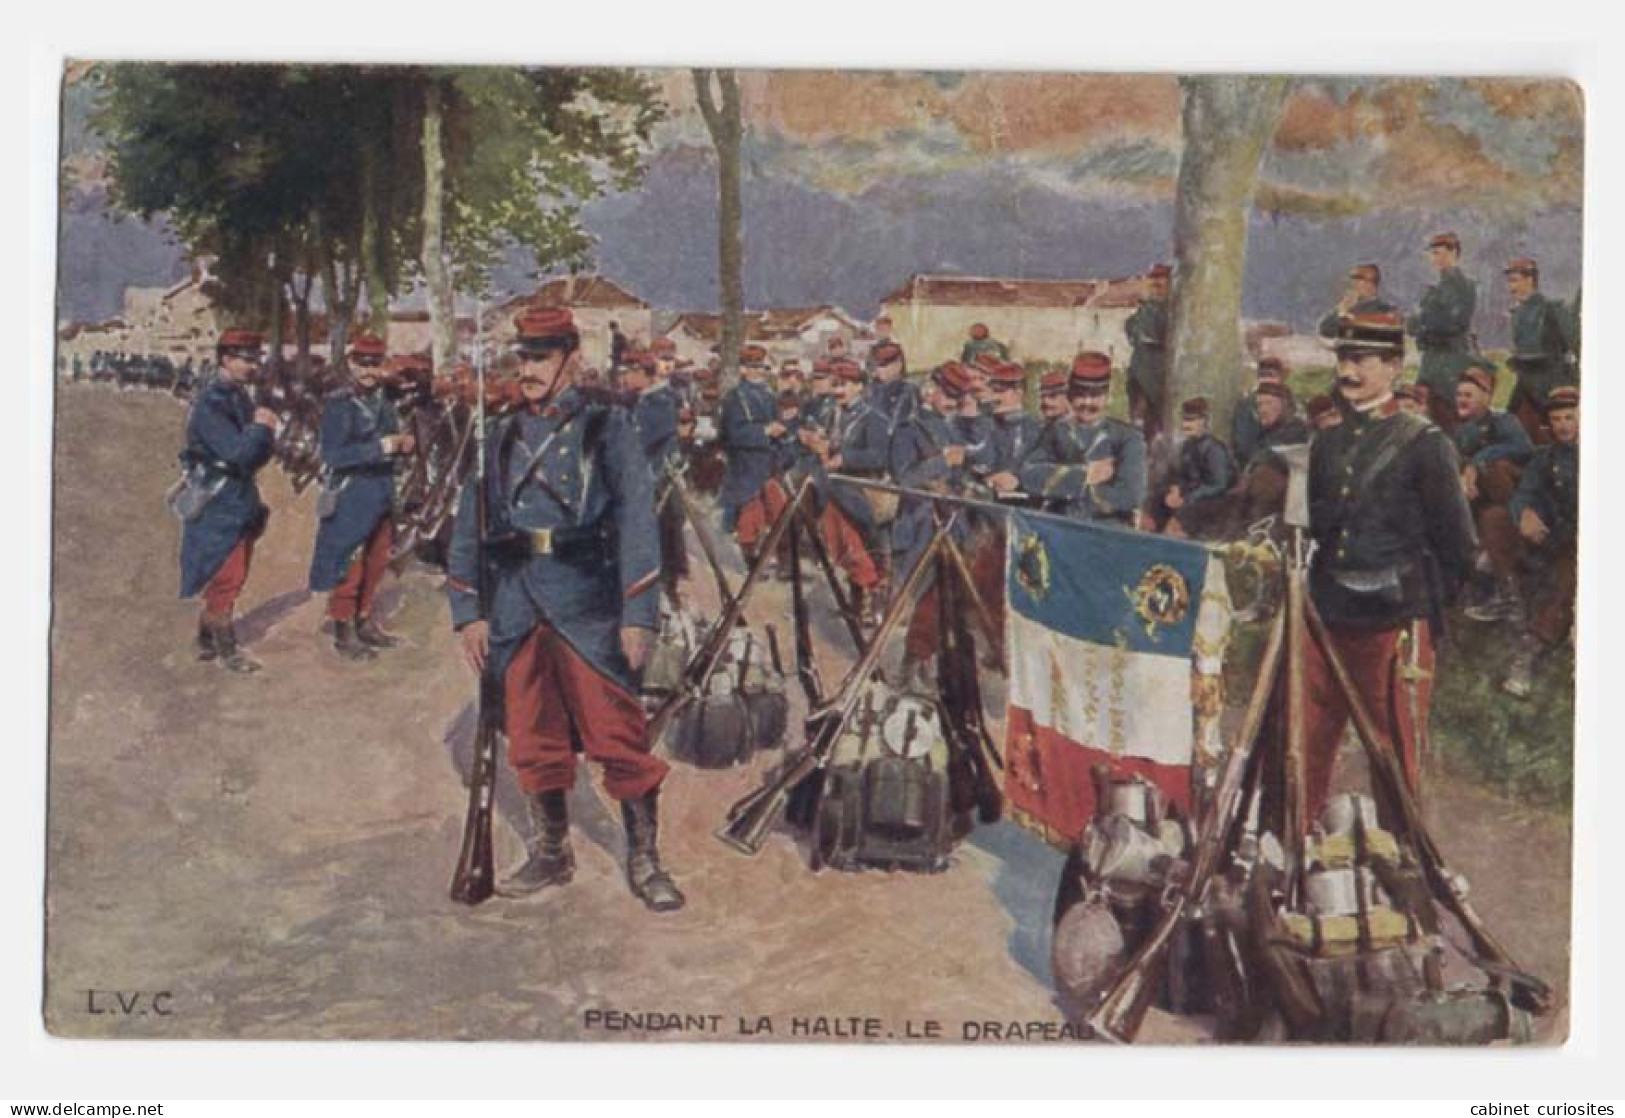 PENDANT LA HALTE LE DRAPEAU - Jolie Illustration - GUERRE DE 1870 - Soldats En Uniformes - L.V.C. - CPA Circulé En 1912 - Other Wars